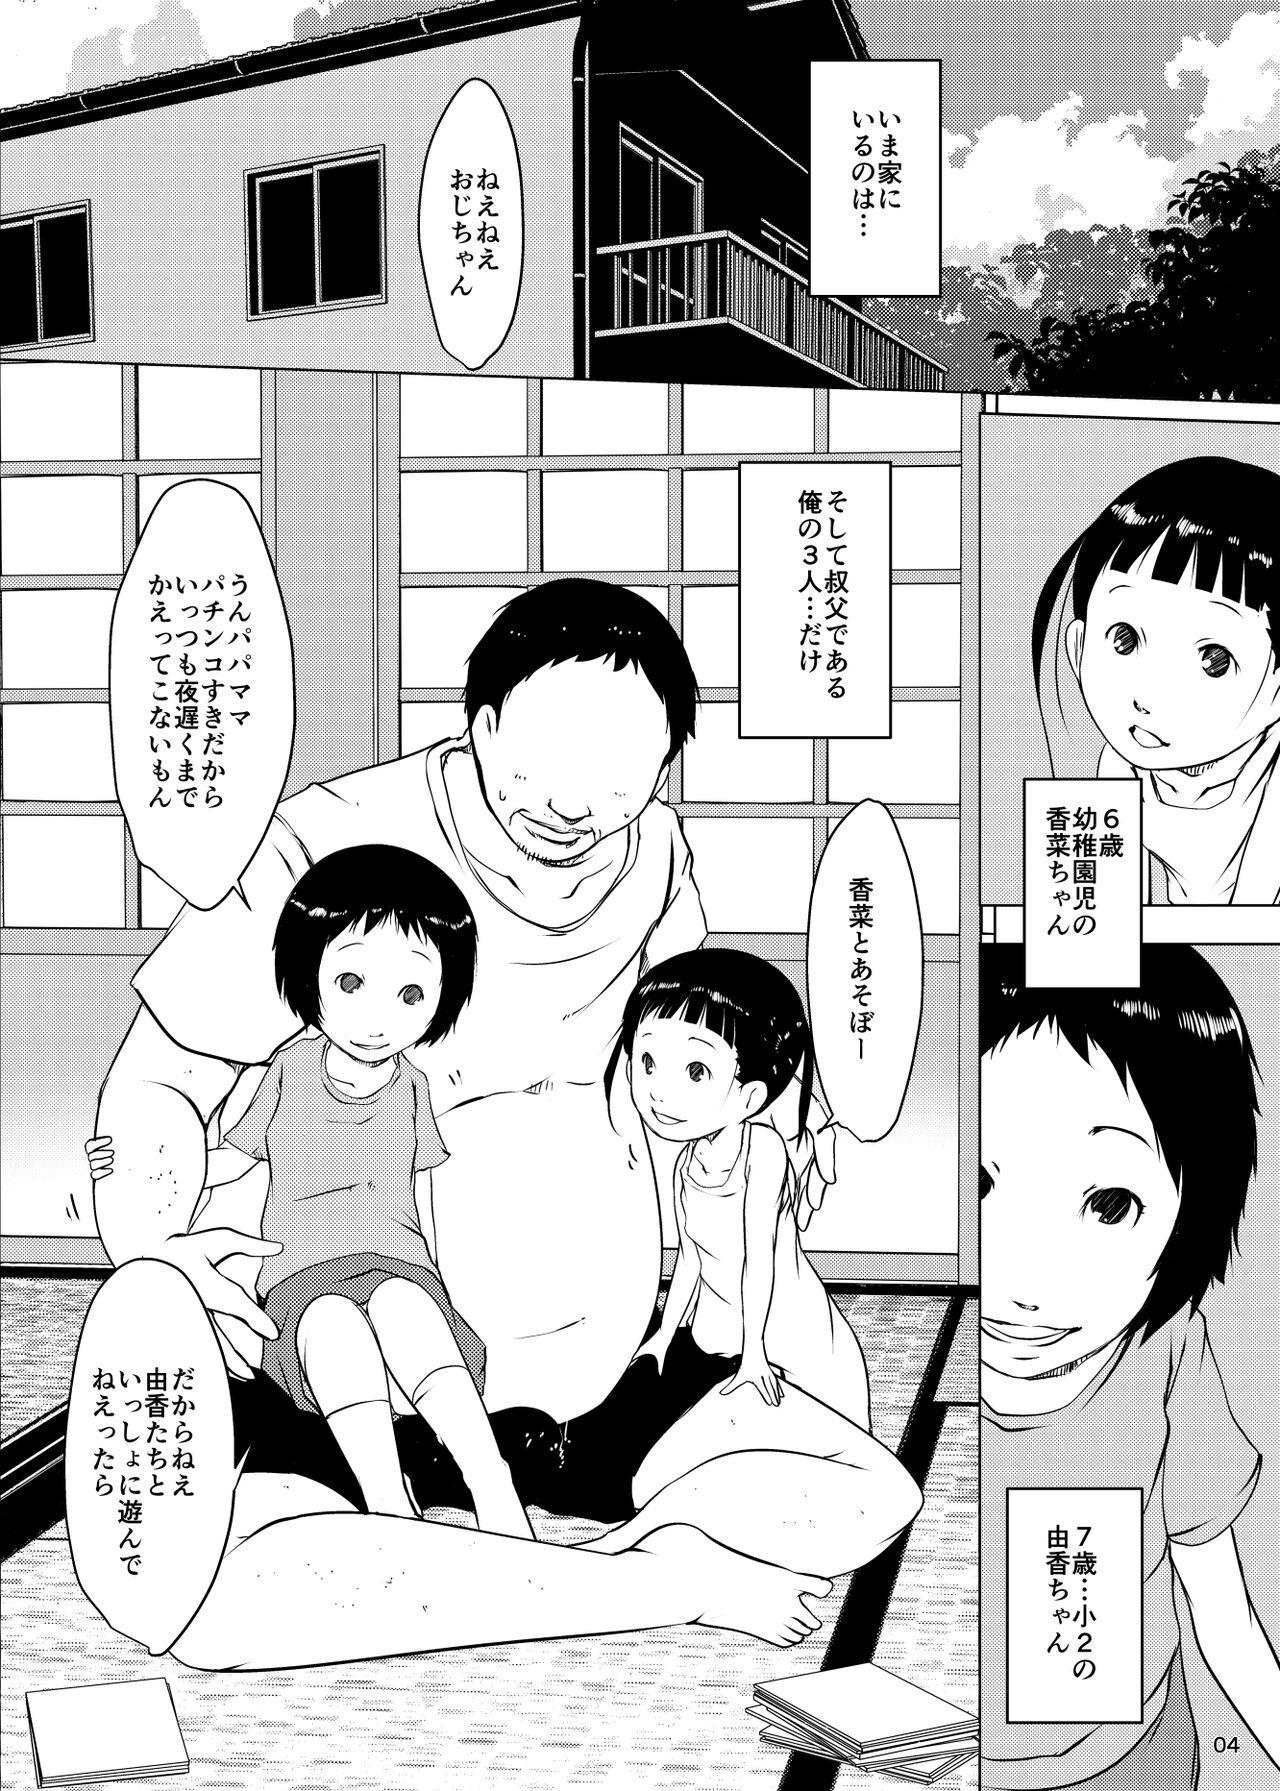 Bubble Butt Jian Hassei Re:05 + Jian Hassei Puni Pedo Kindergarten 2022 Futanari - Page 3